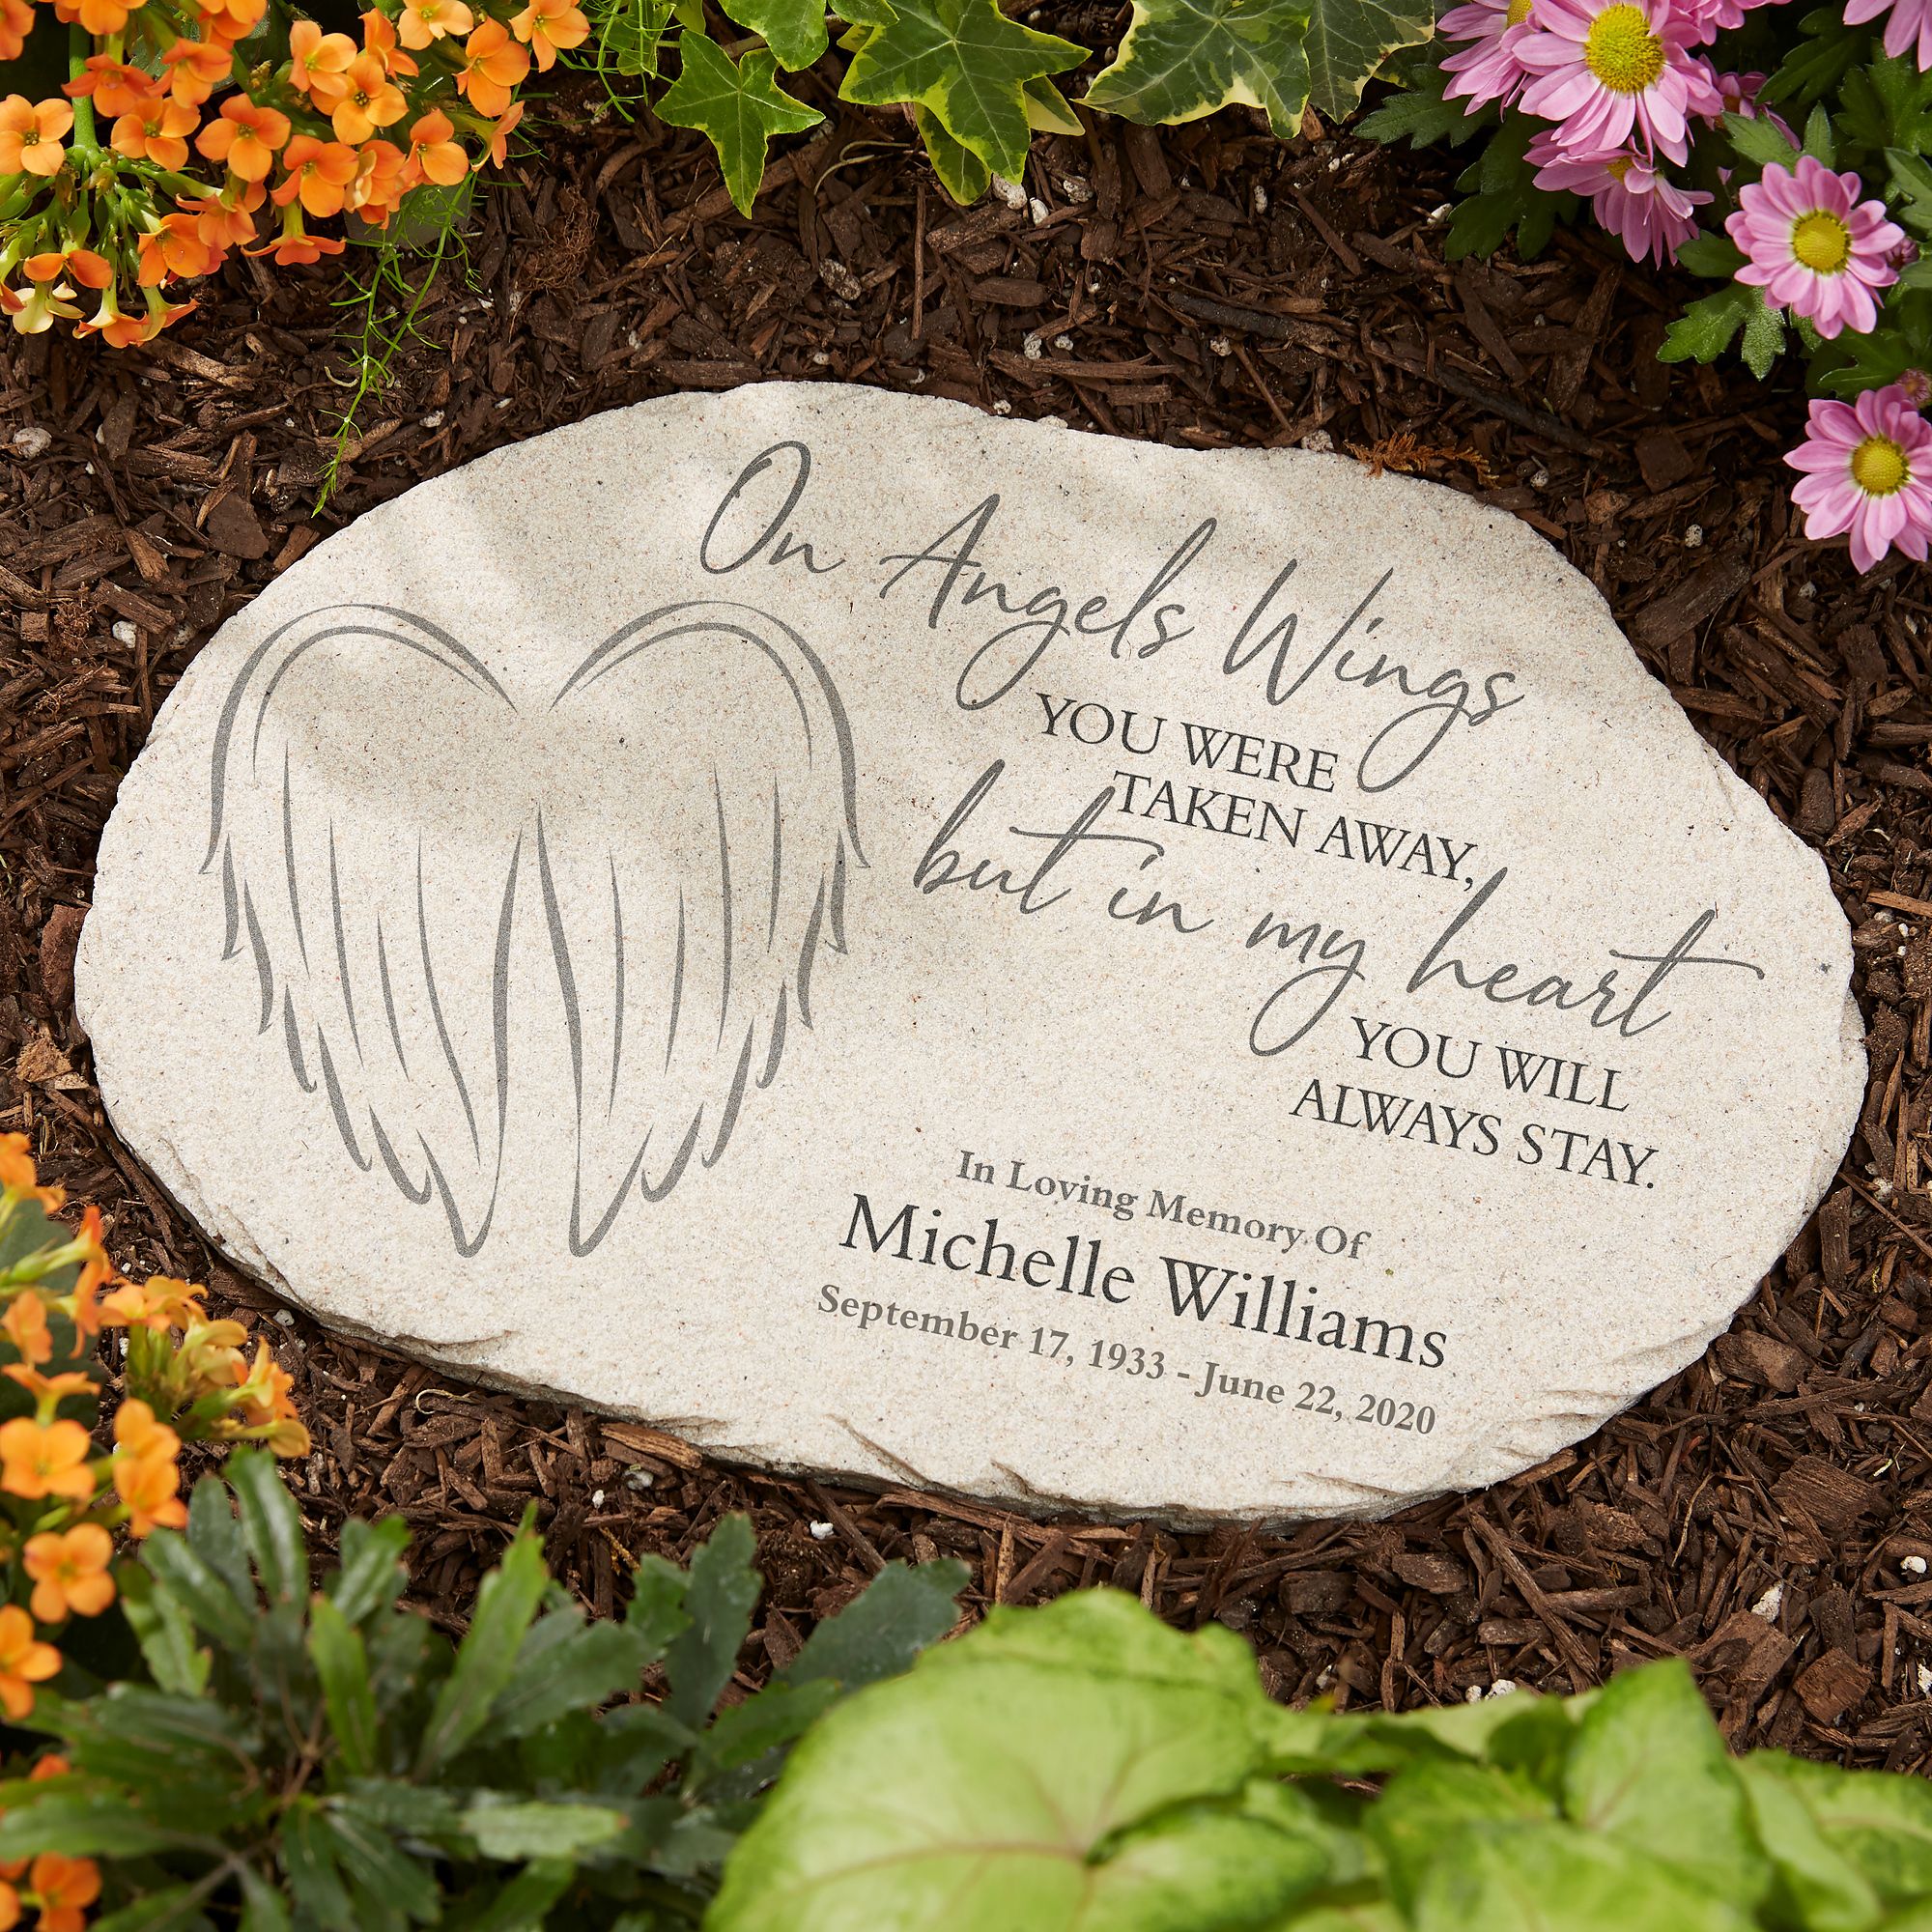 Personalized Those We Love Memorial Stone Miles Kimball Memorial